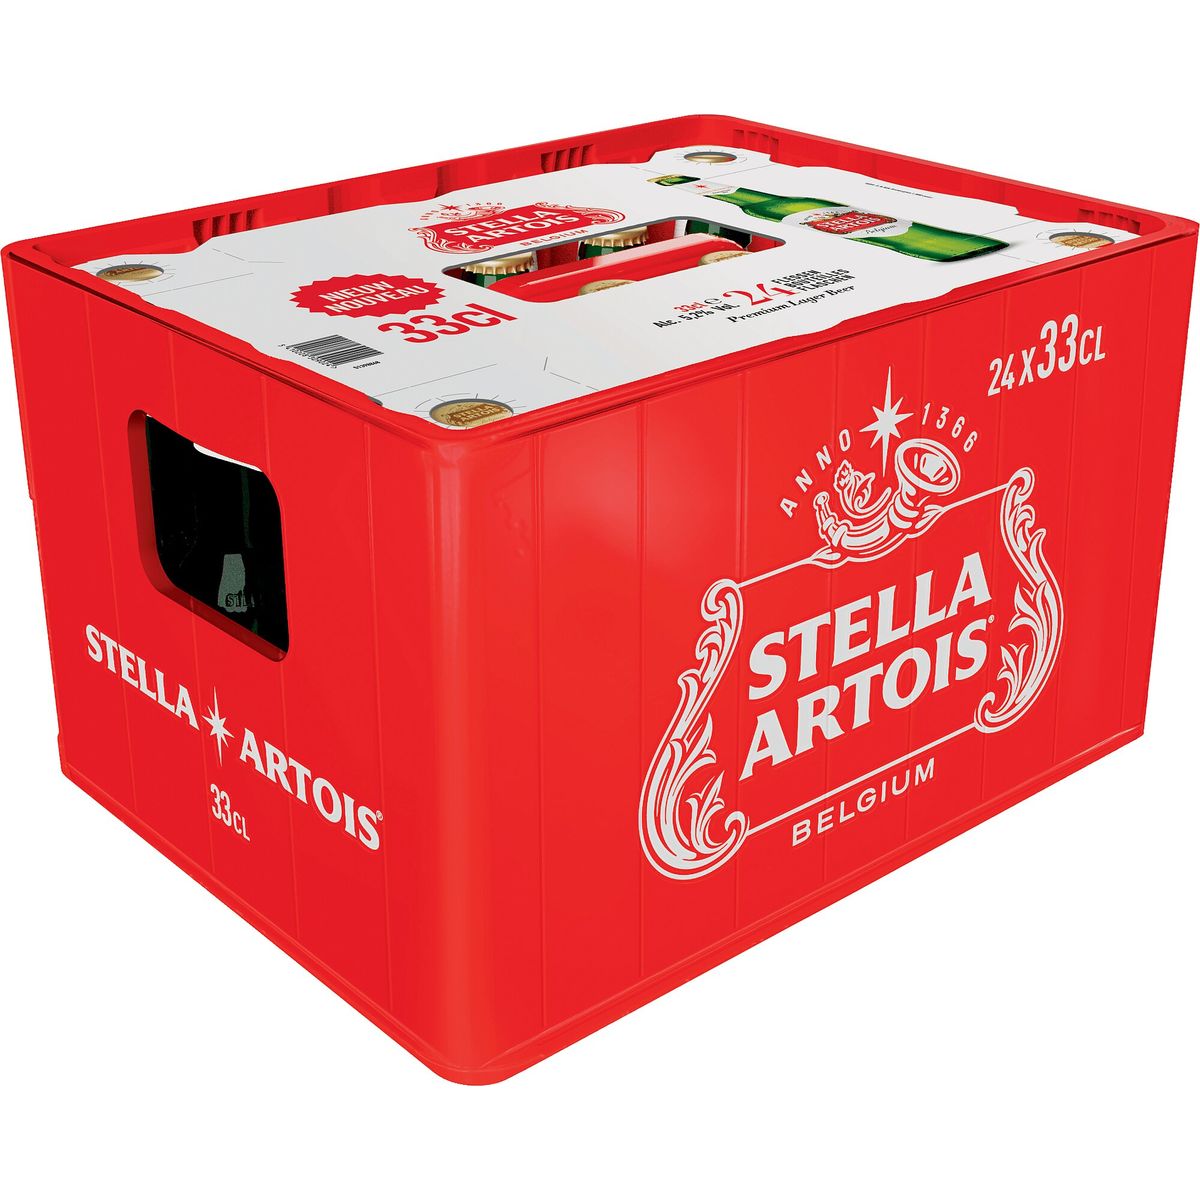 Stella Artois Bière Blonde Pils 5.2% Alc 24 x 33 cl Bac